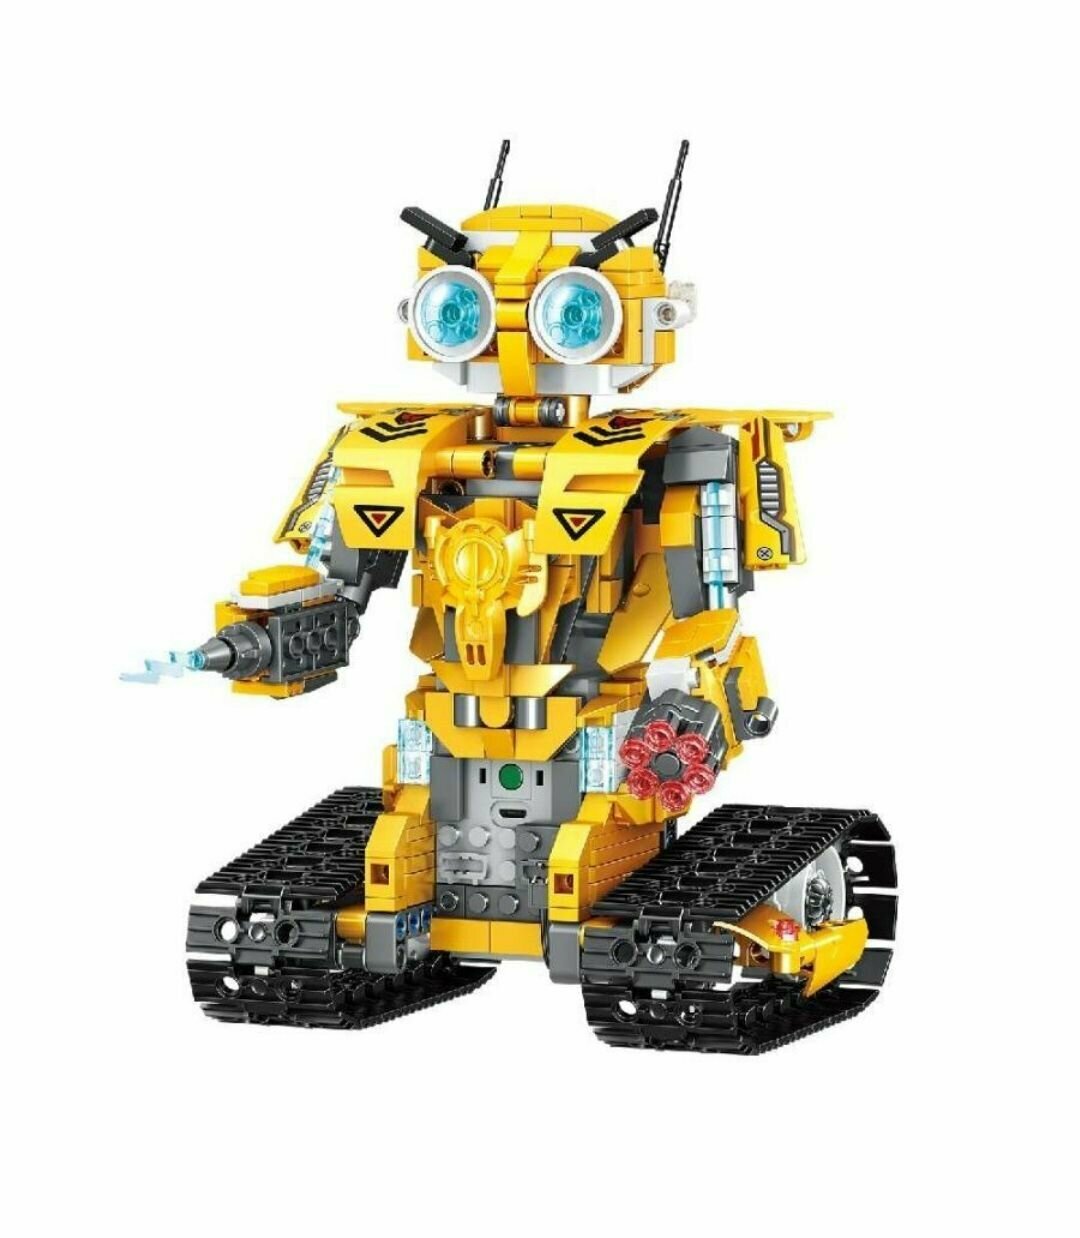 Конструктор Robots Желтый Робот на радиоуправлении 513 деталей QL1216